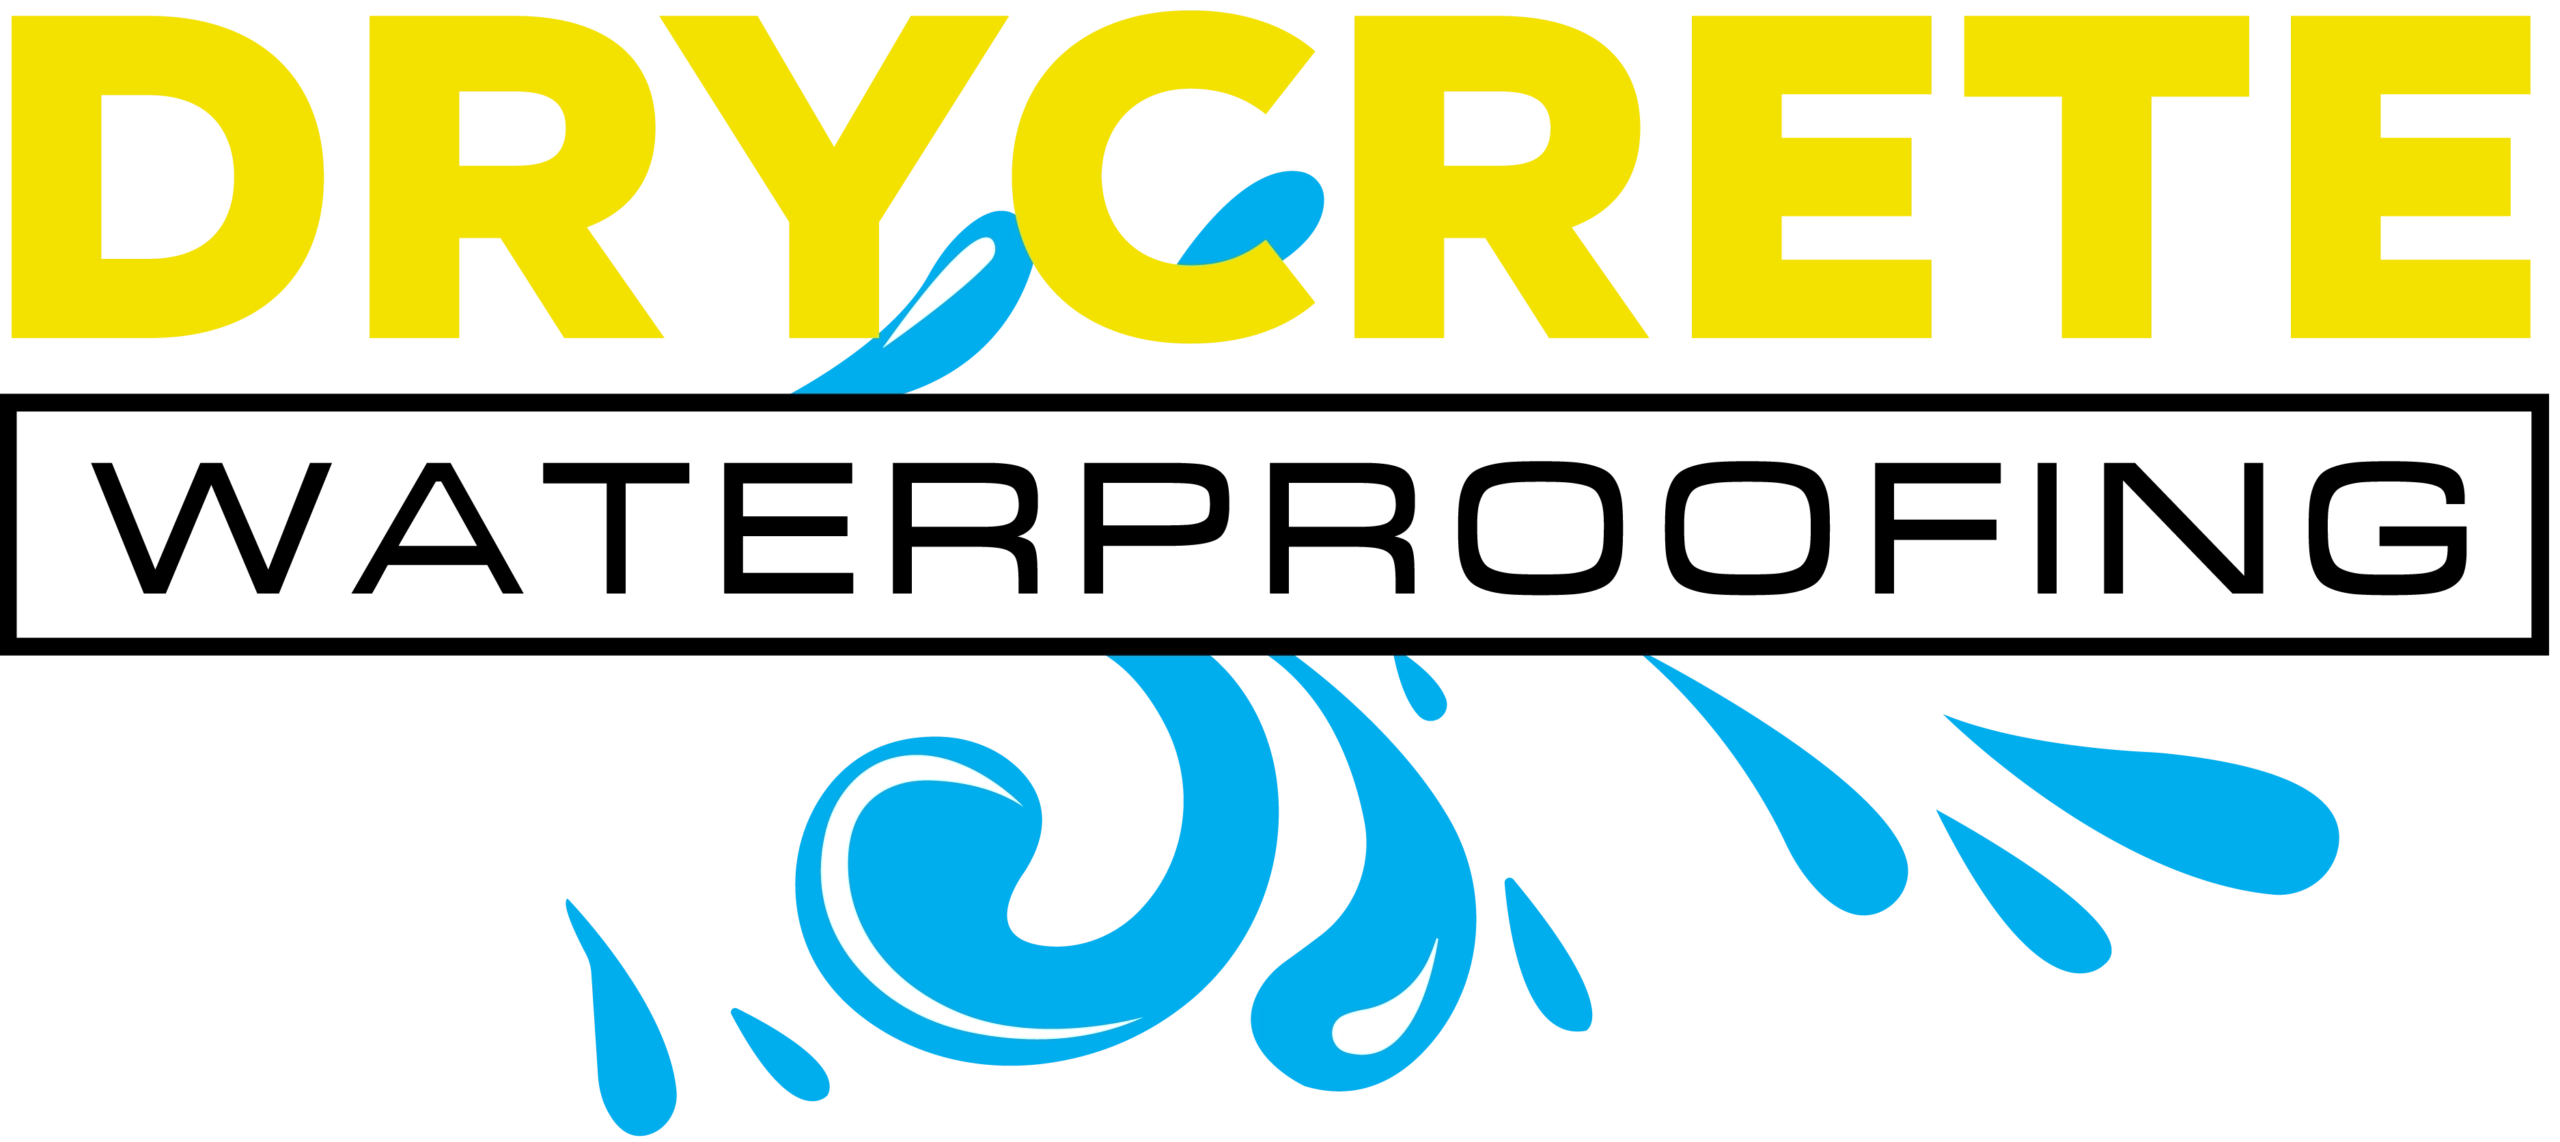 Drycrete Waterproofing Logo